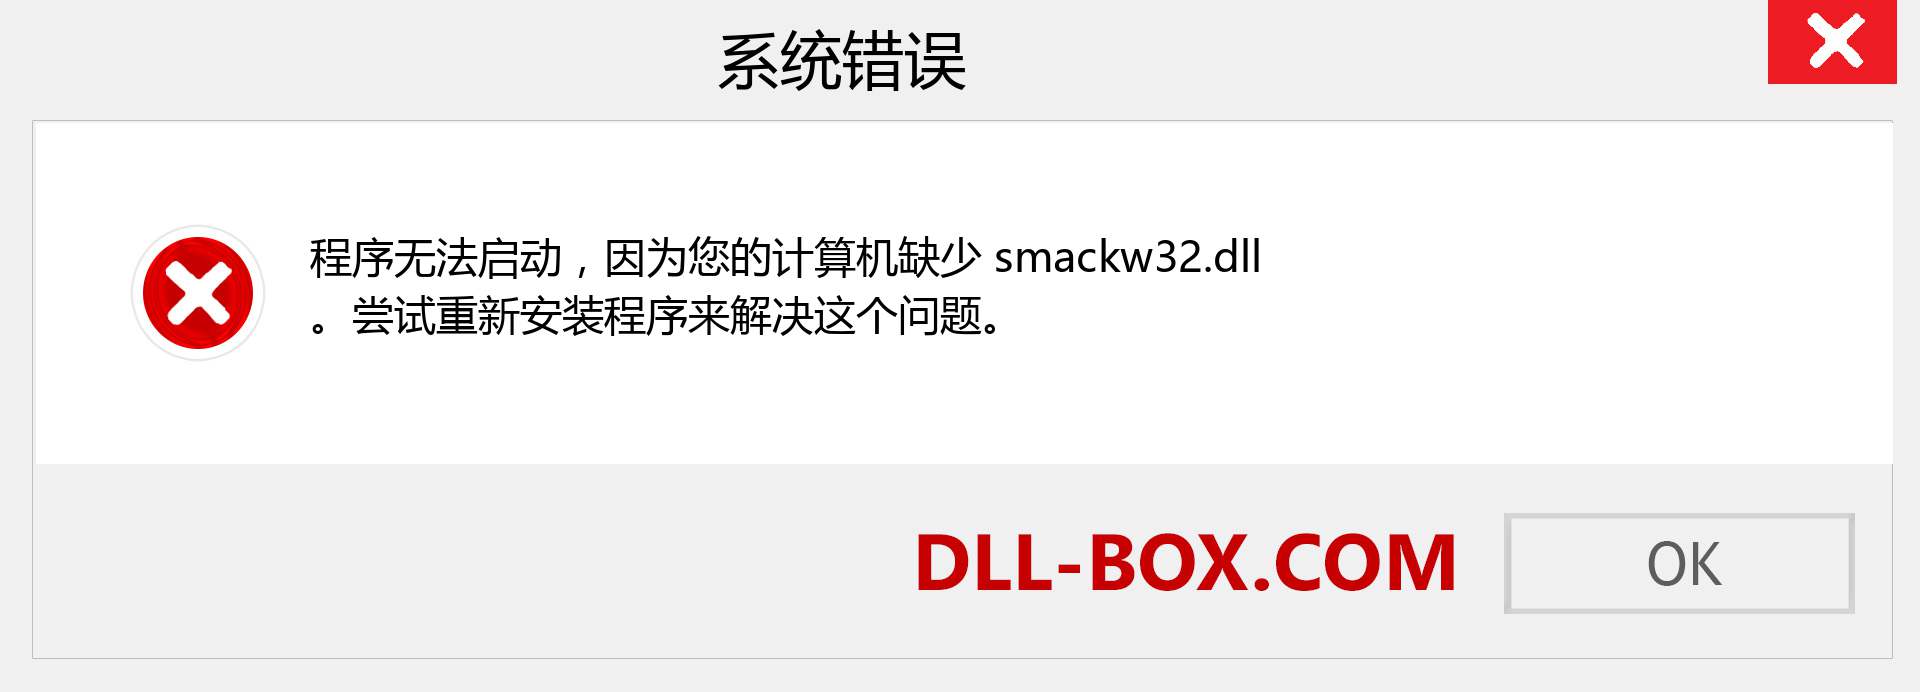 smackw32.dll 文件丢失？。 适用于 Windows 7、8、10 的下载 - 修复 Windows、照片、图像上的 smackw32 dll 丢失错误